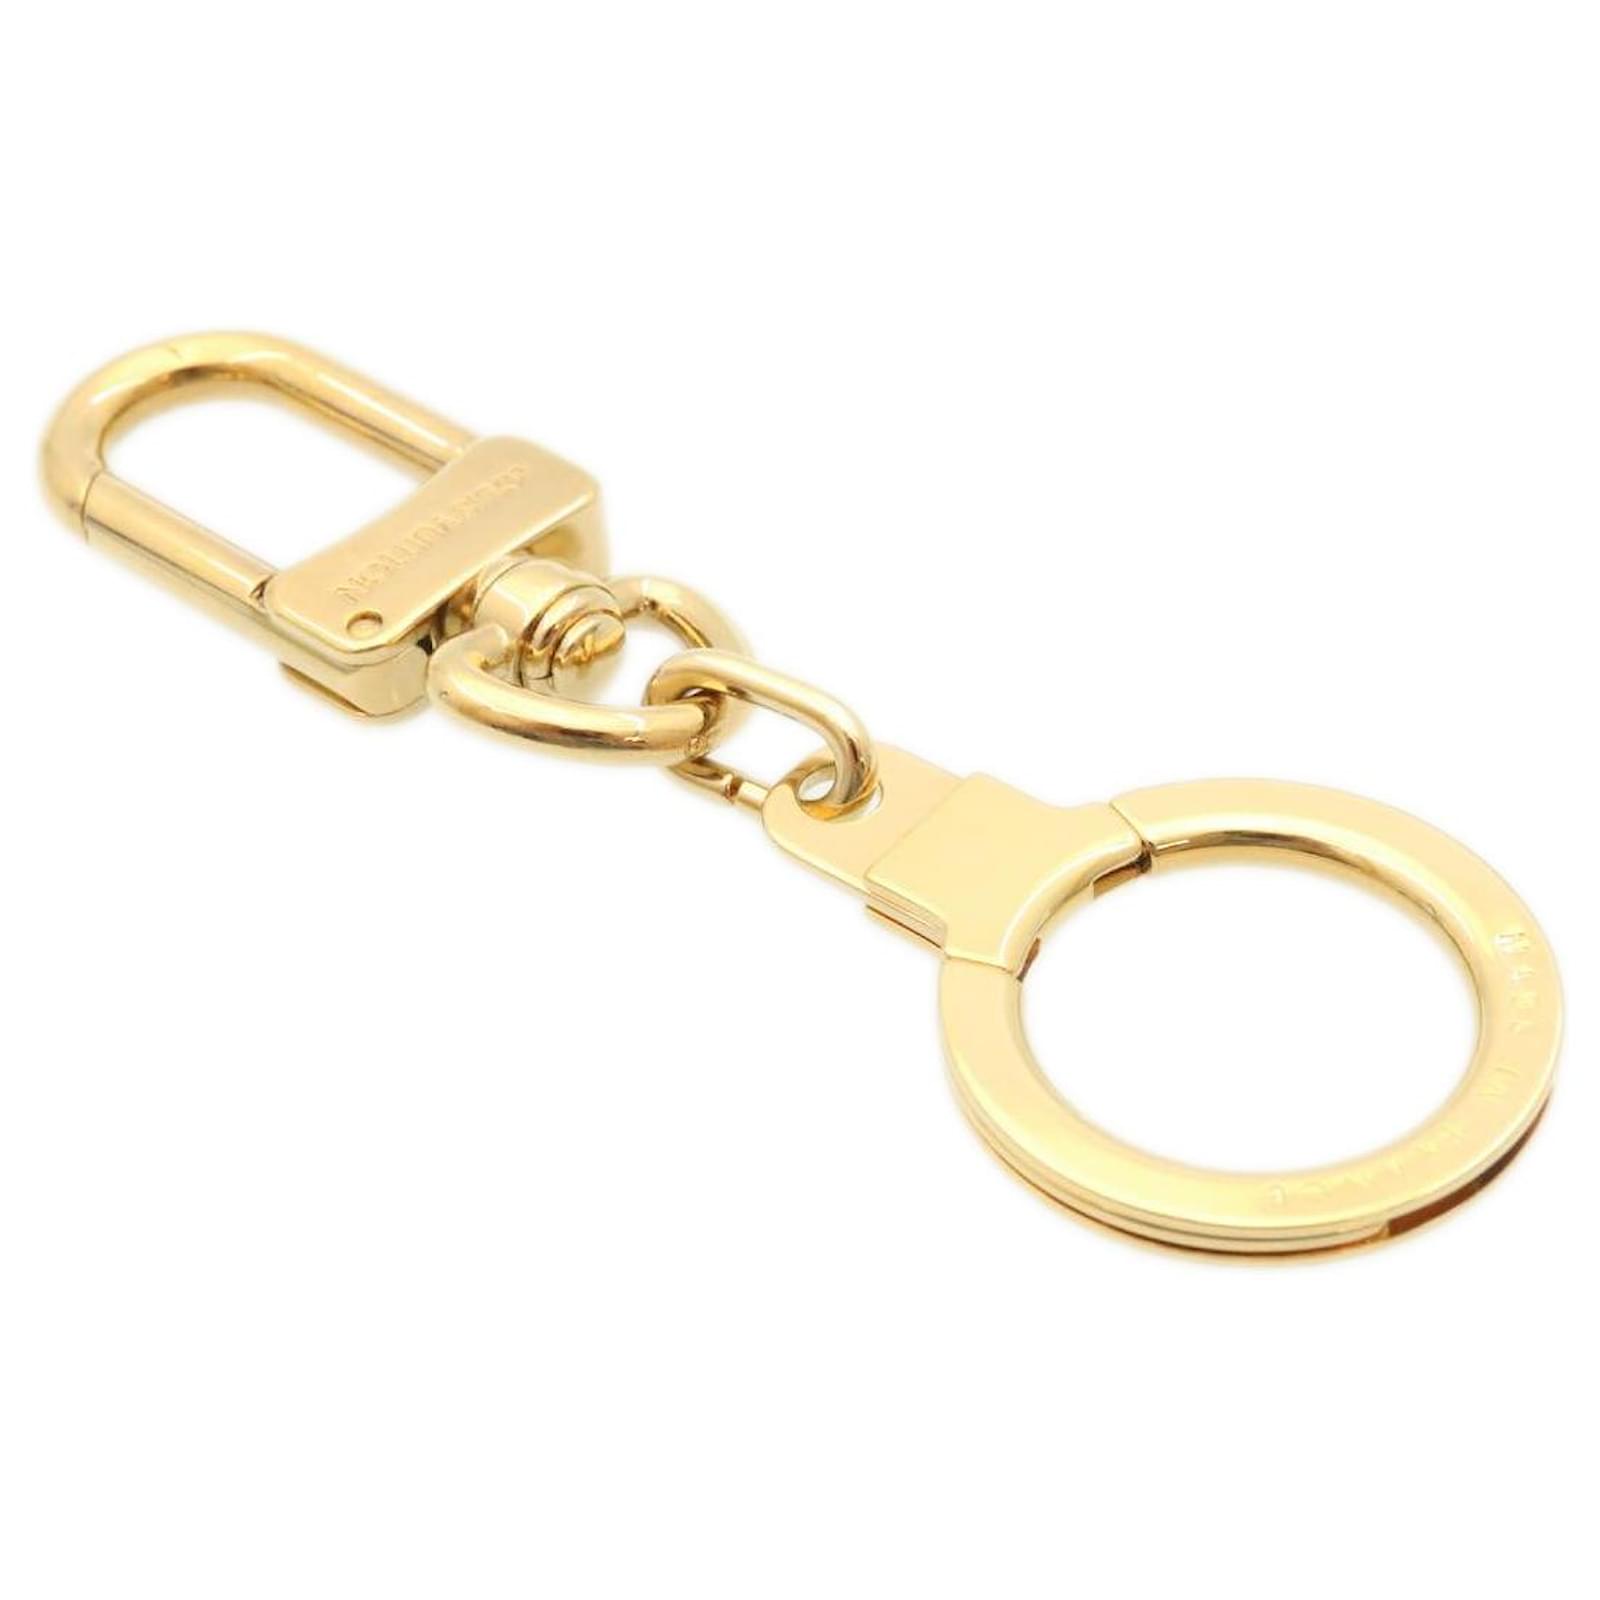 LOUIS VUITTON Anneau Cles Key Ring Gold Tone M62694 LV Auth th3536